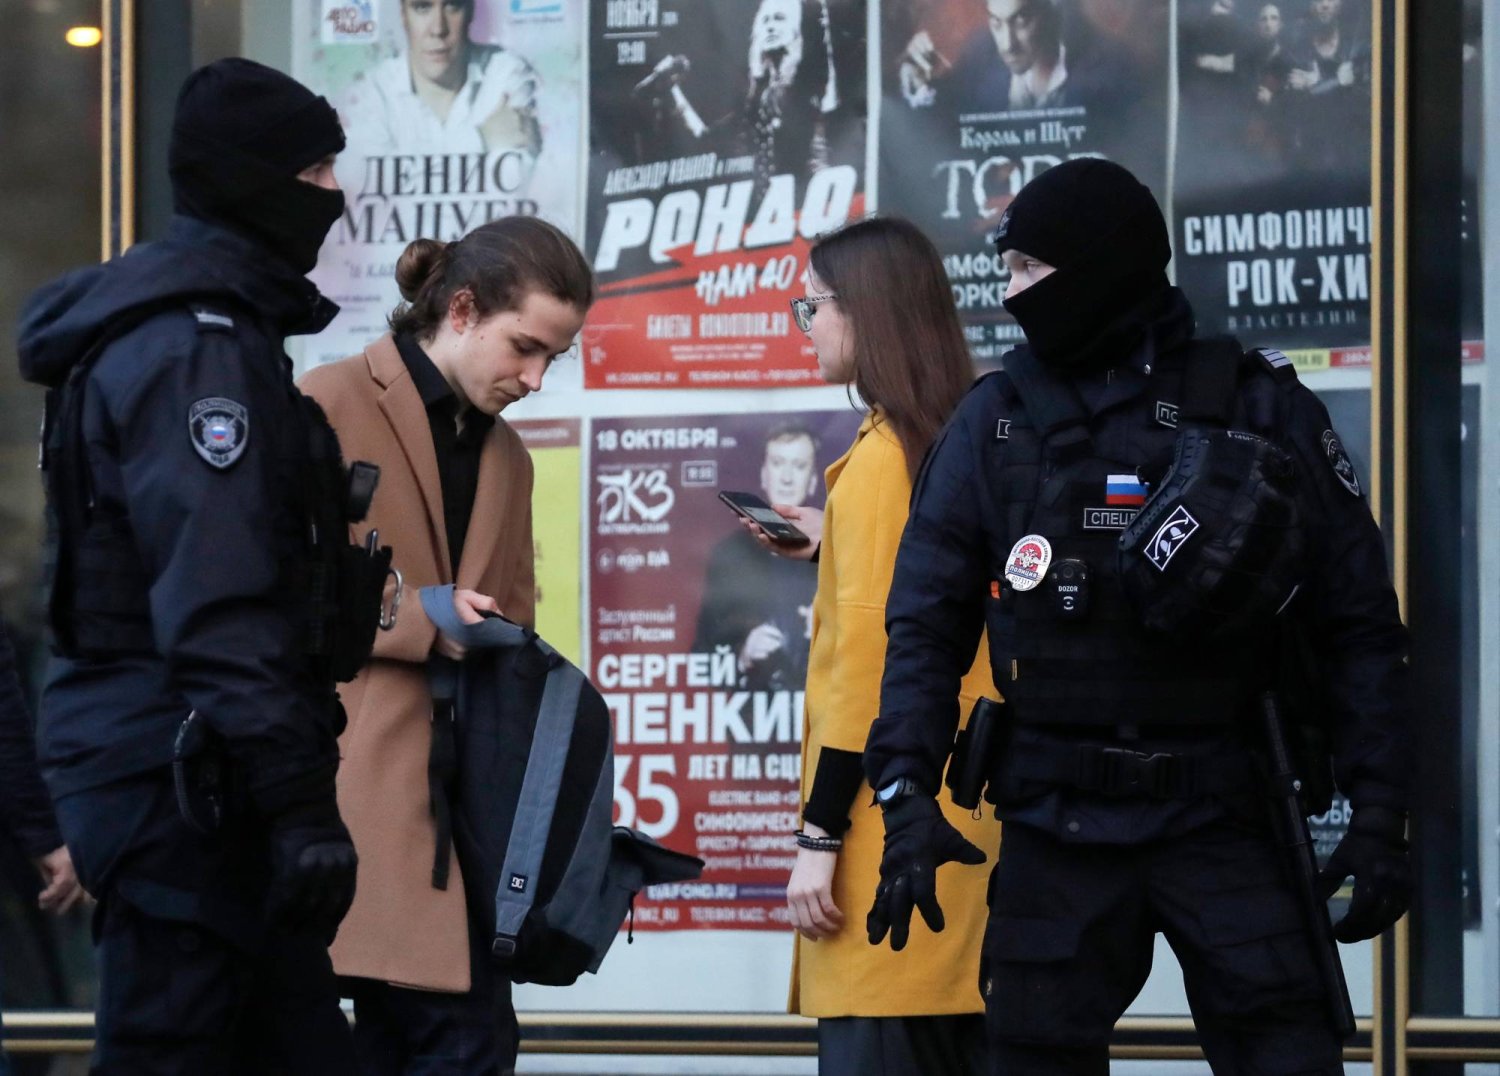 الشرطة الروسية تفتش حقائب سيدات قرب قاعة أوكتايابرسكي للحفلات وسط إجراءات أمنية مشددة (إ.ب.أ)